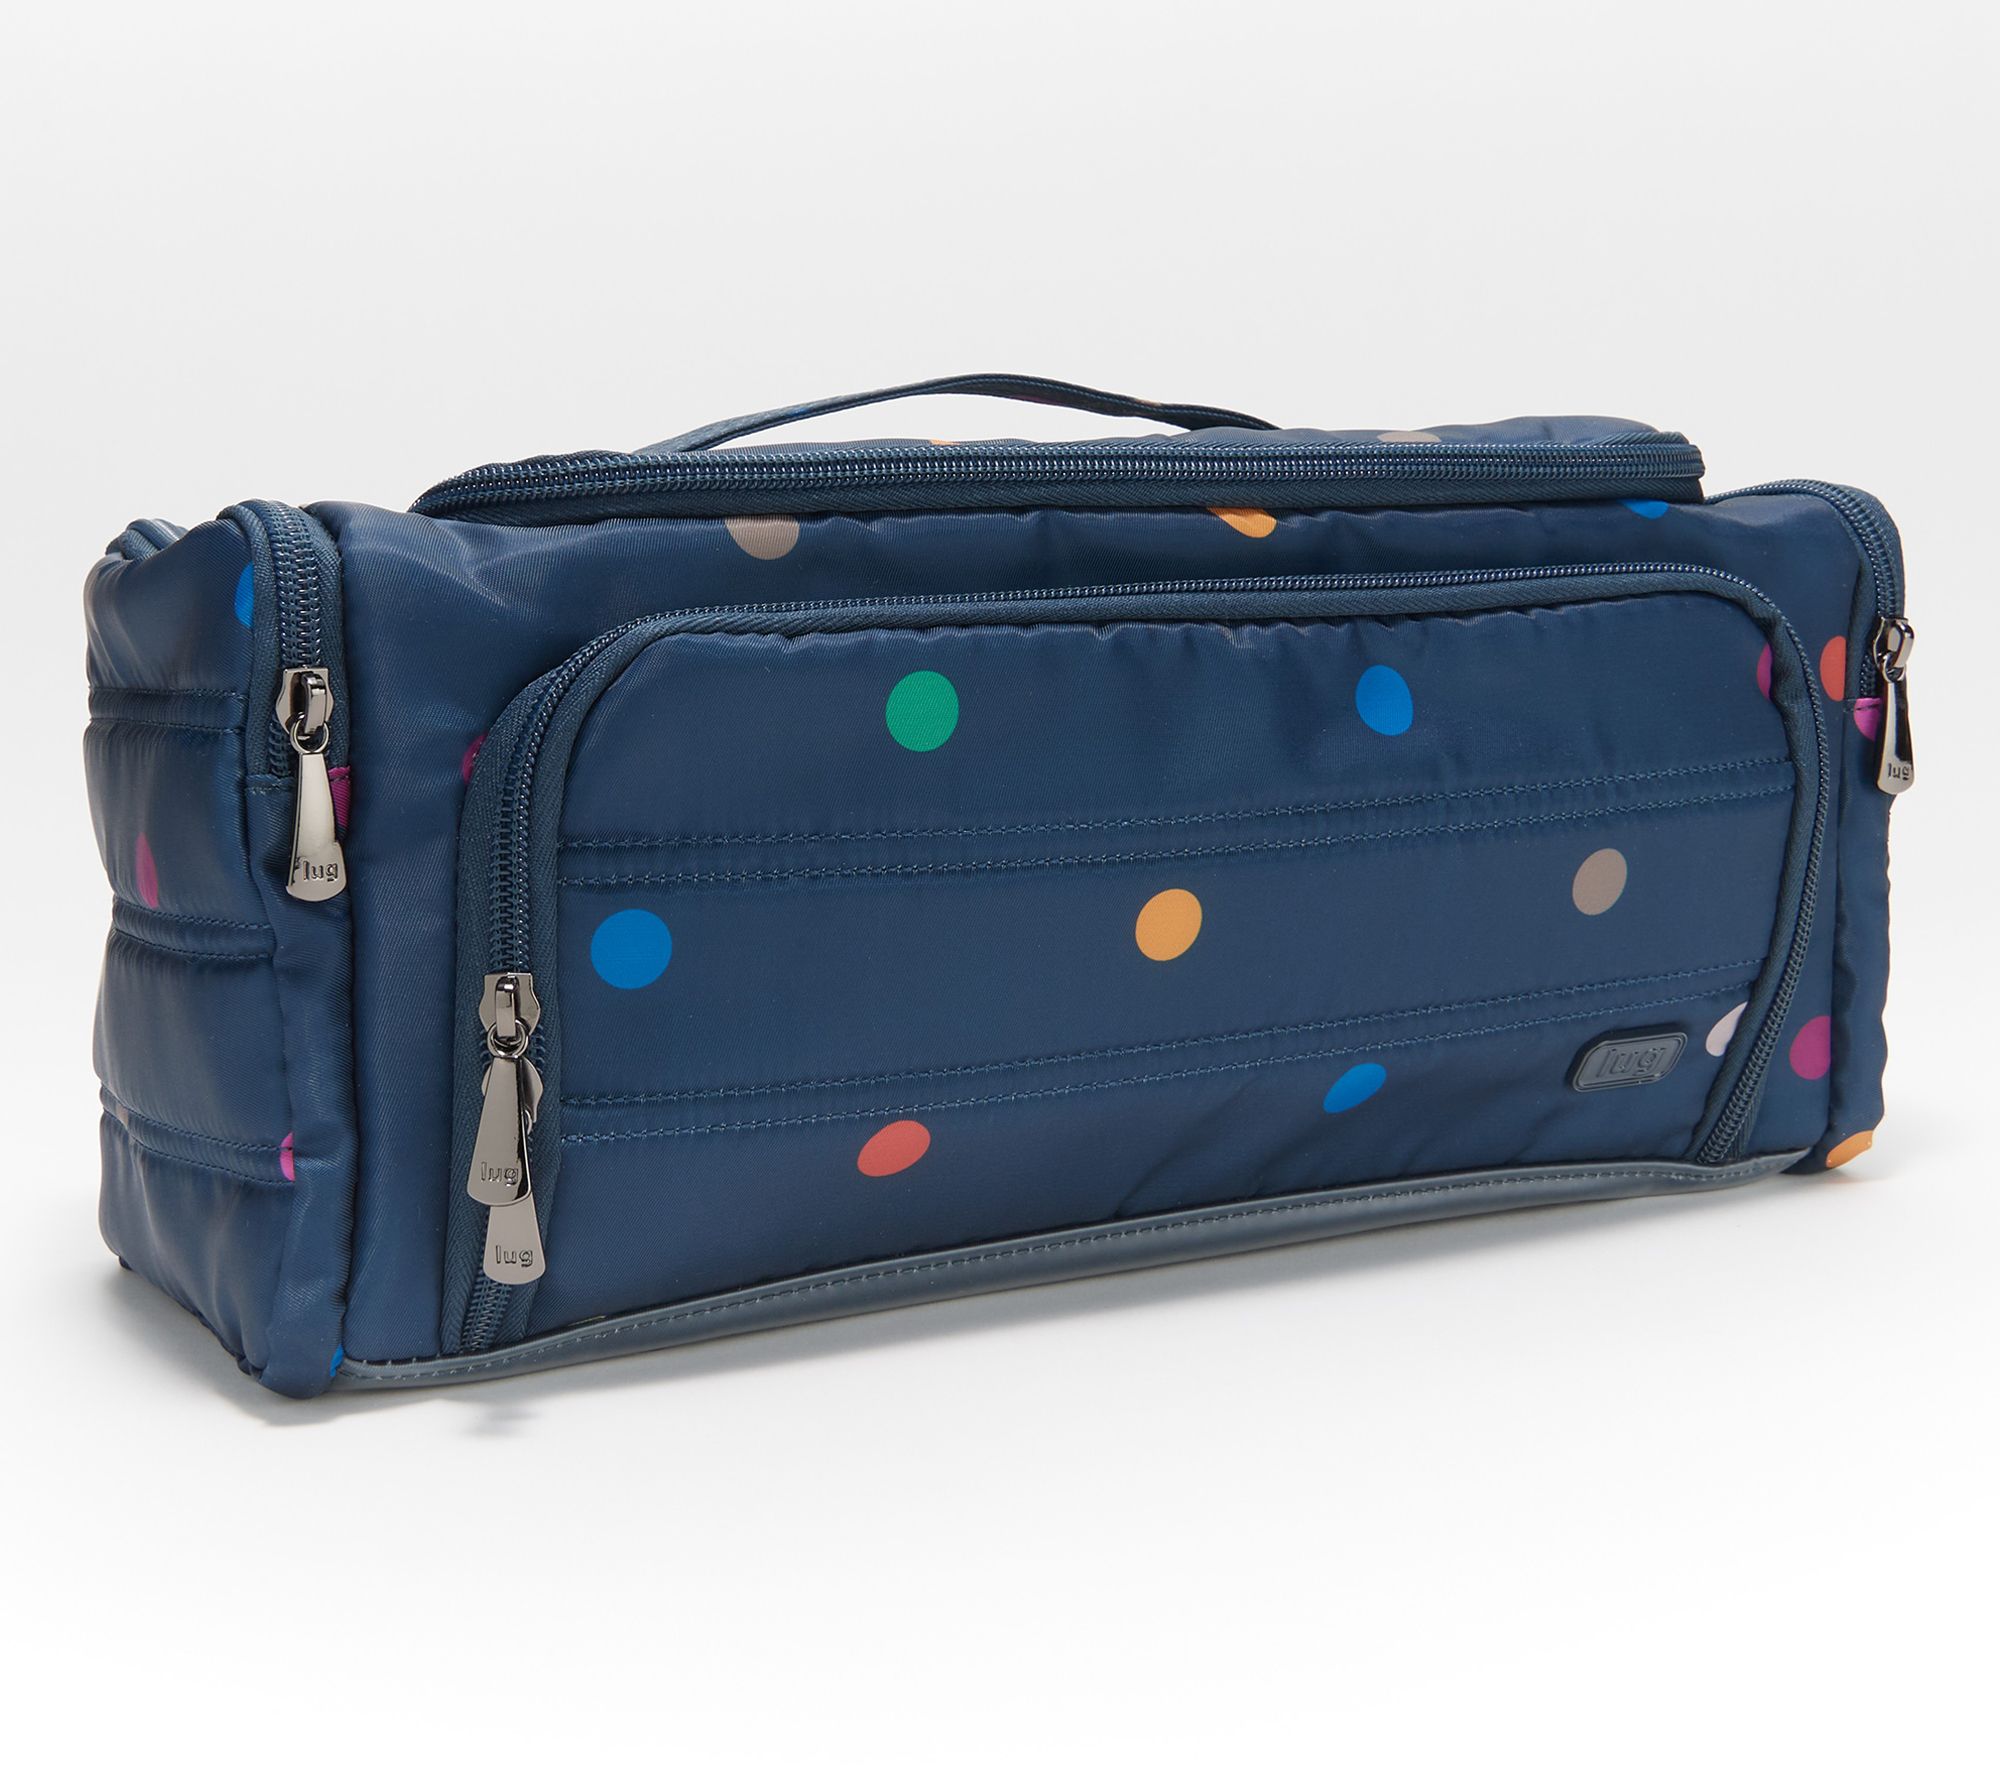 Lug Trolley XL Cosmetic Case - Heather Indigo - Just Bags Luggage